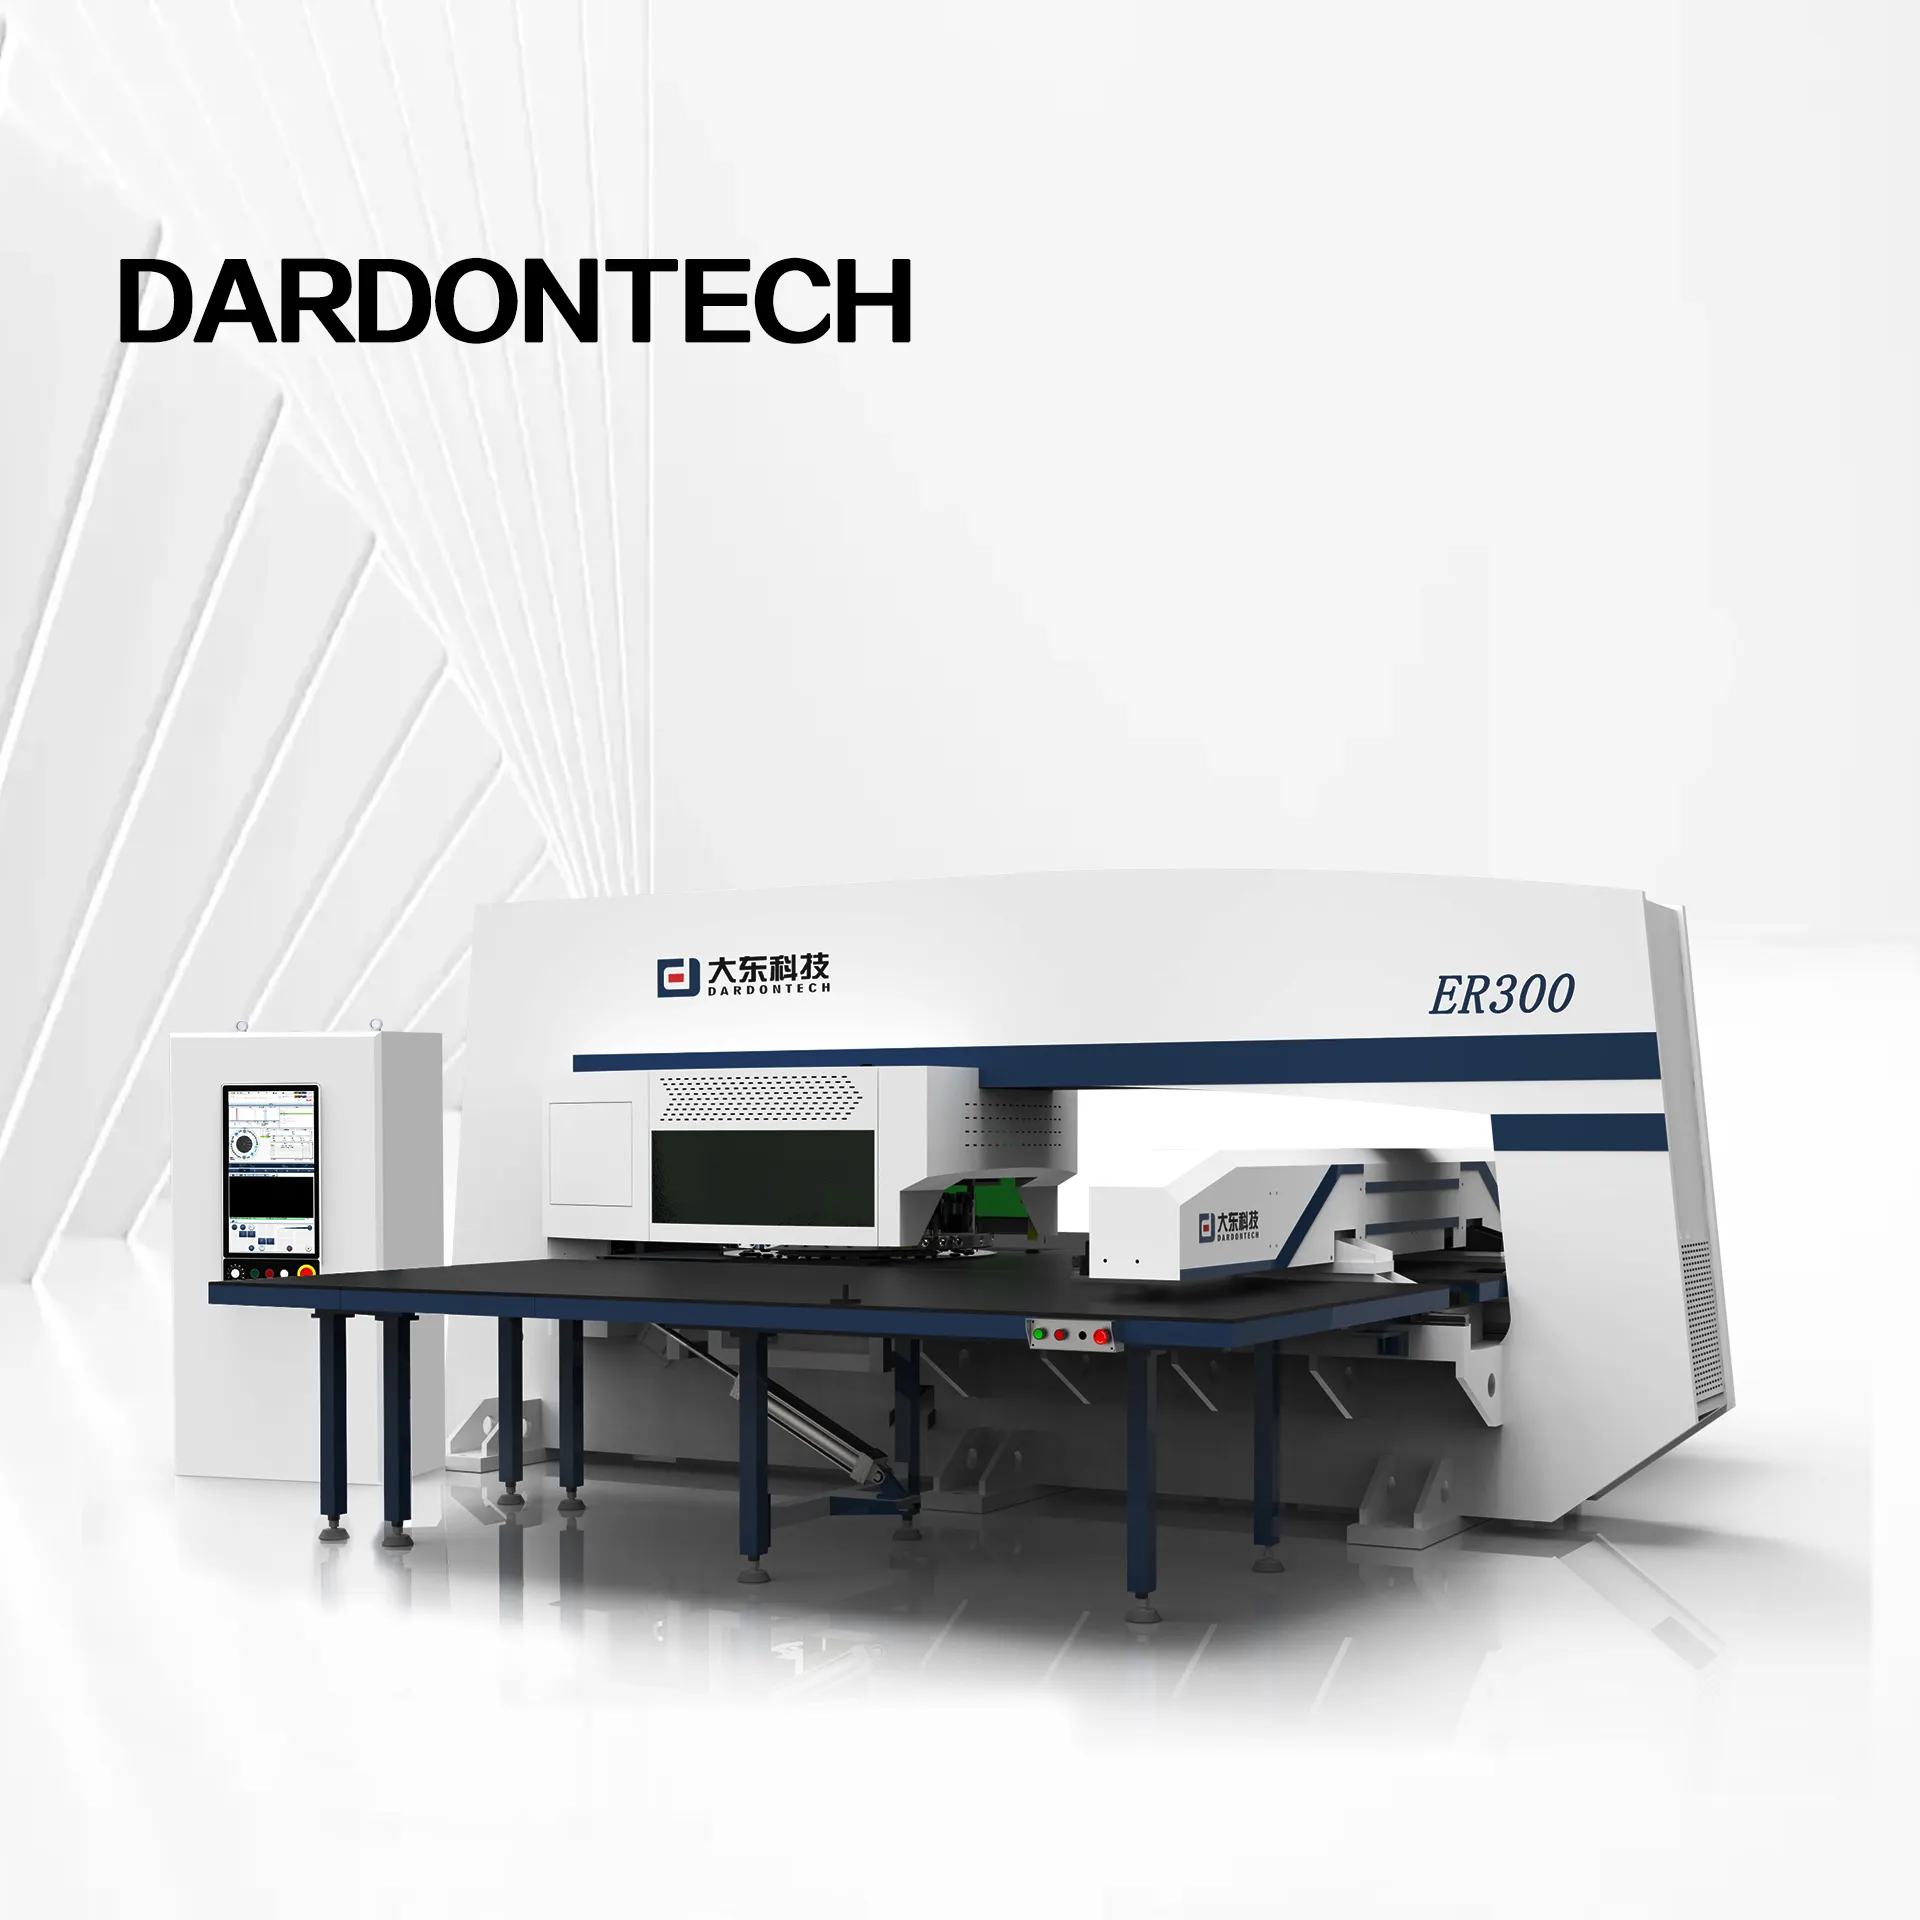 Top performance DARDONTECH CNC tourelle poinçon presse ER300 ultime CNC machine de poinçonnage tôle gaufrage Extrusion formage